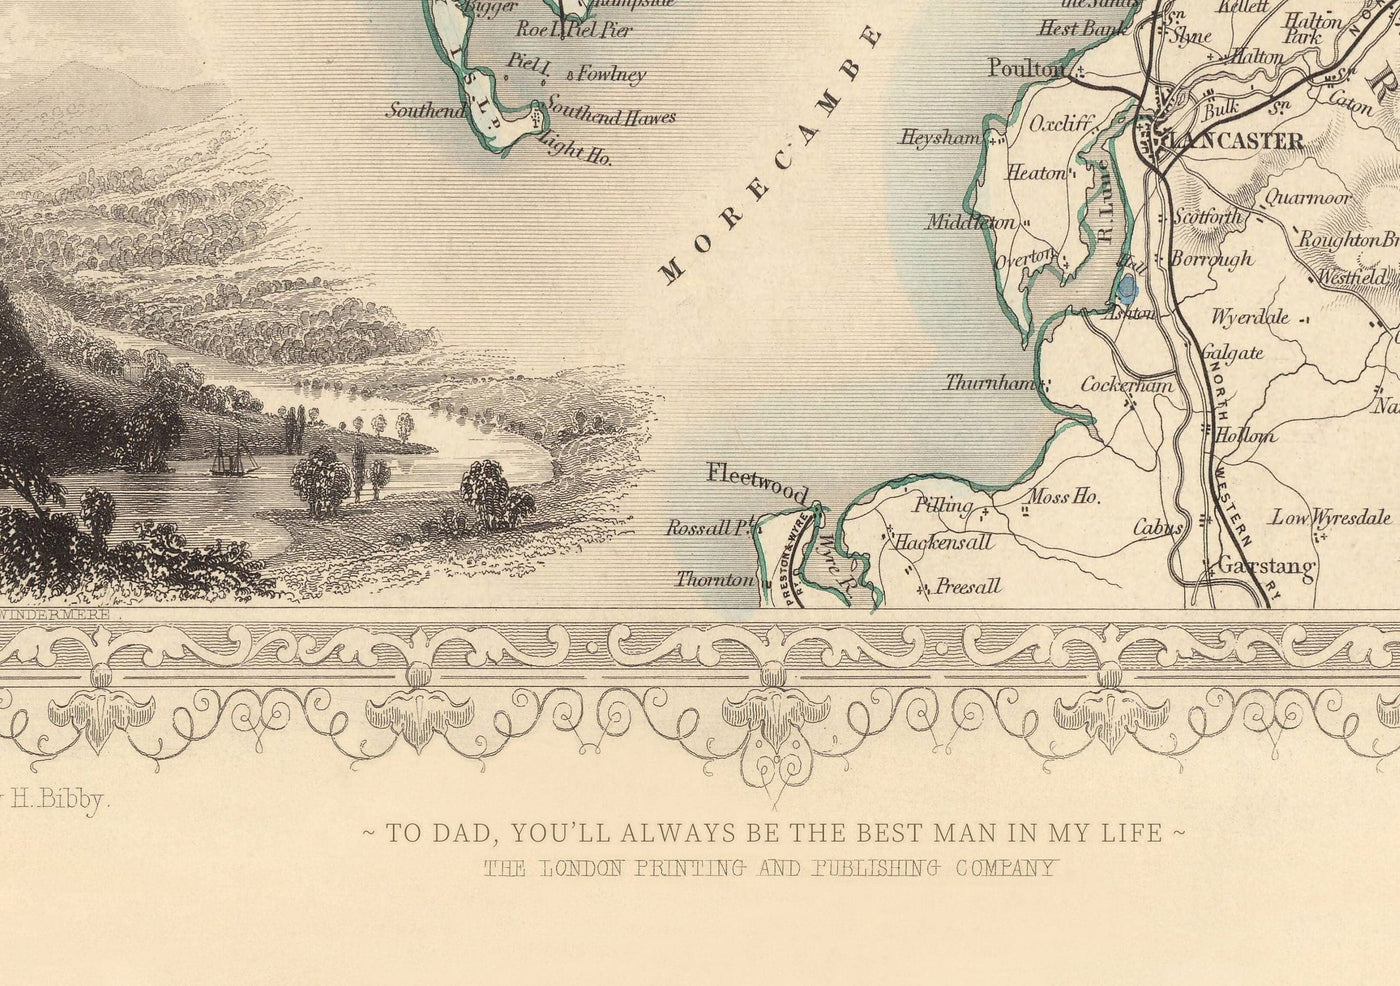 Ancienne carte de Manchester et de ses environs par John Rapkin, 1851 - Hôtel de ville, Infirmerie royale, gares ferroviaires